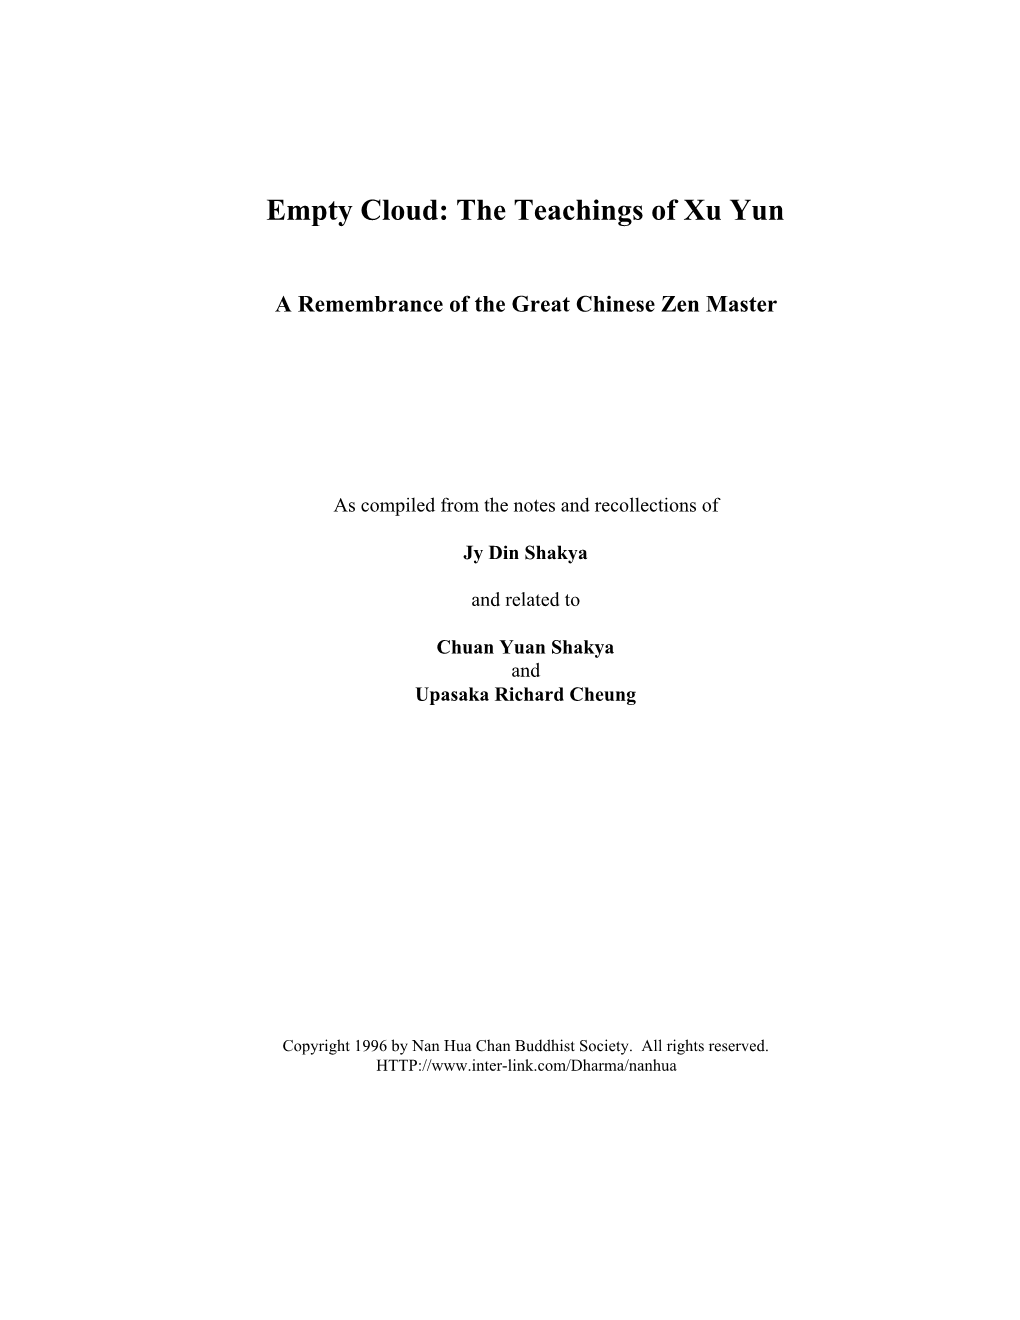 Empty Cloud: the Teachings of Xu Yun